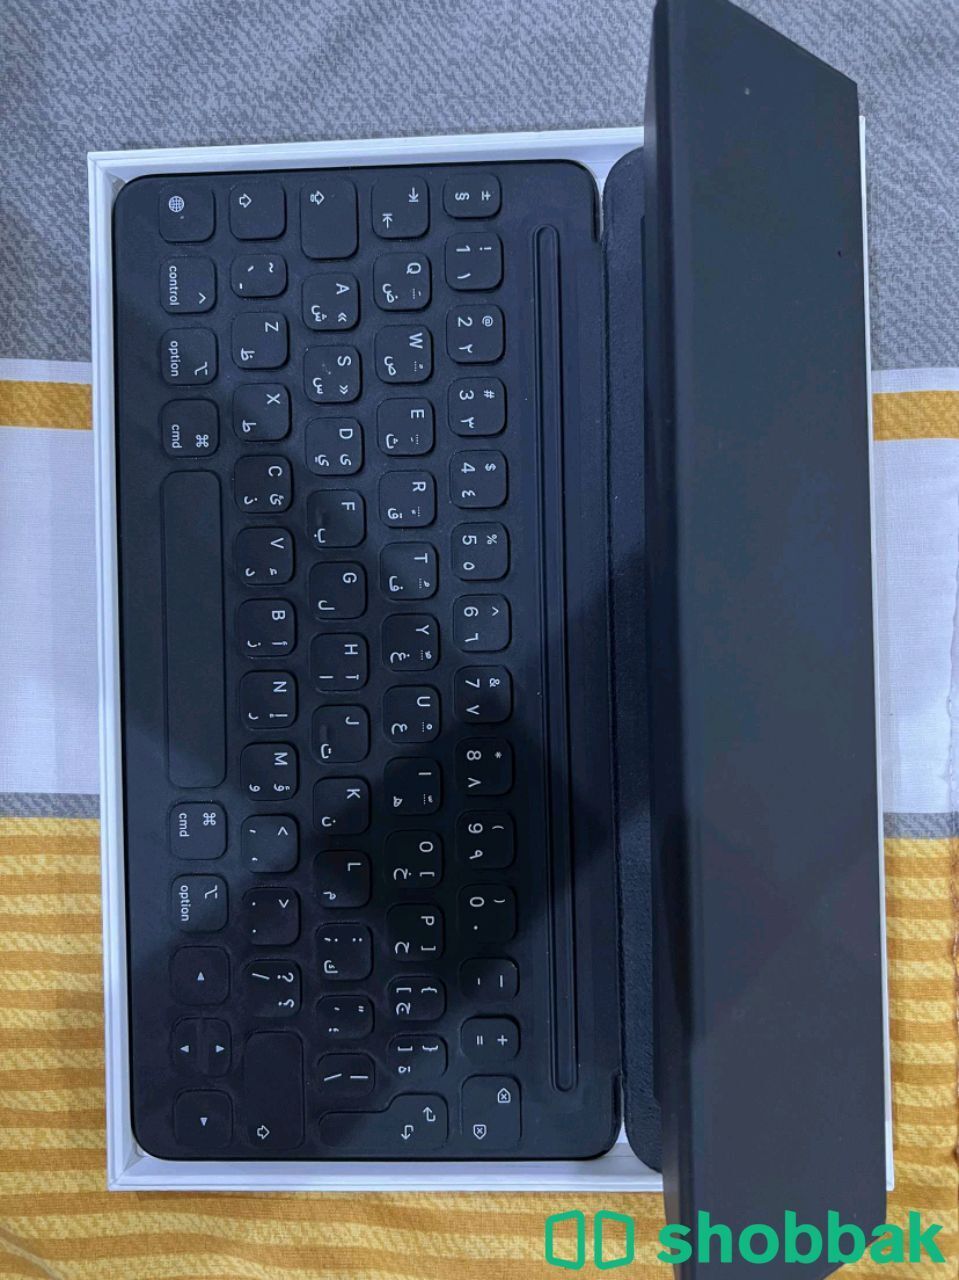 لوحة مفاتيح ايباد  Smart keyboard  شباك السعودية